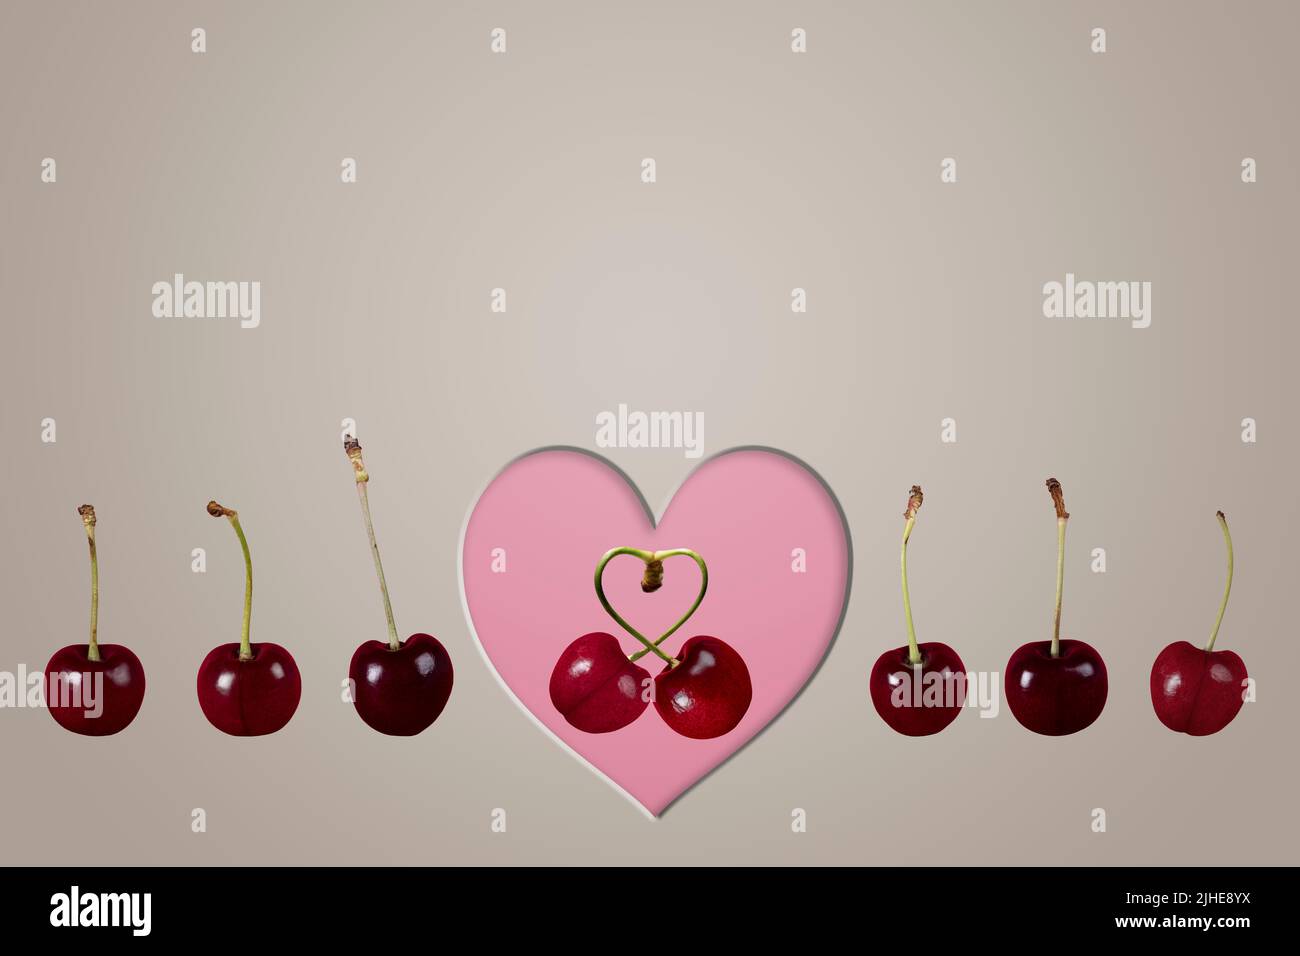 un couple unique aime les cerises fruit image concept avec ligne de rangs de cerises et coeur sur un fond gris coloré Banque D'Images